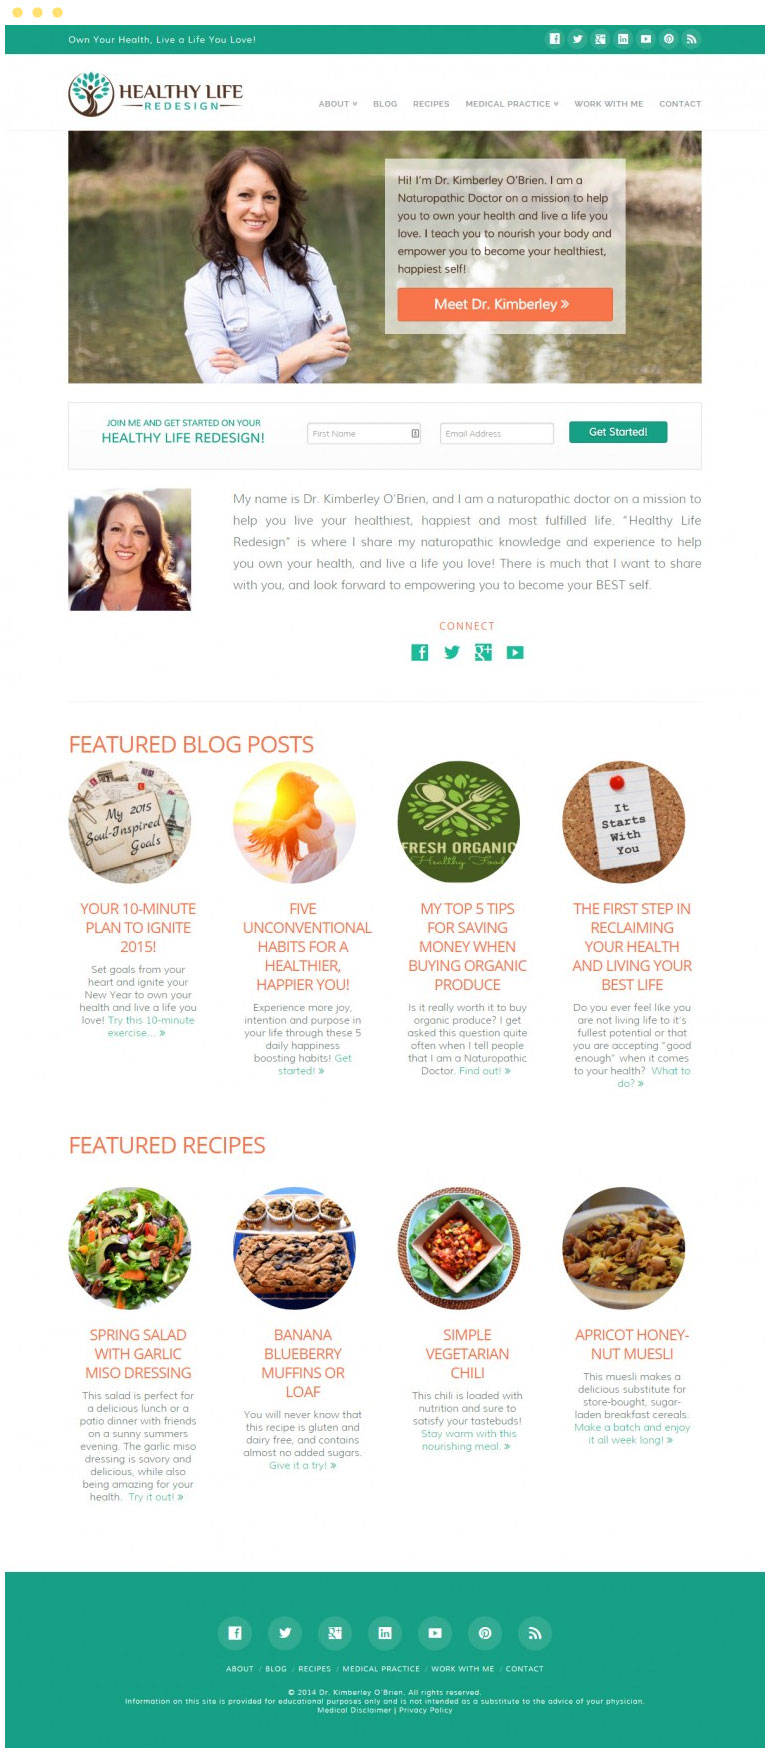 Healthy Life Redesign Website #1